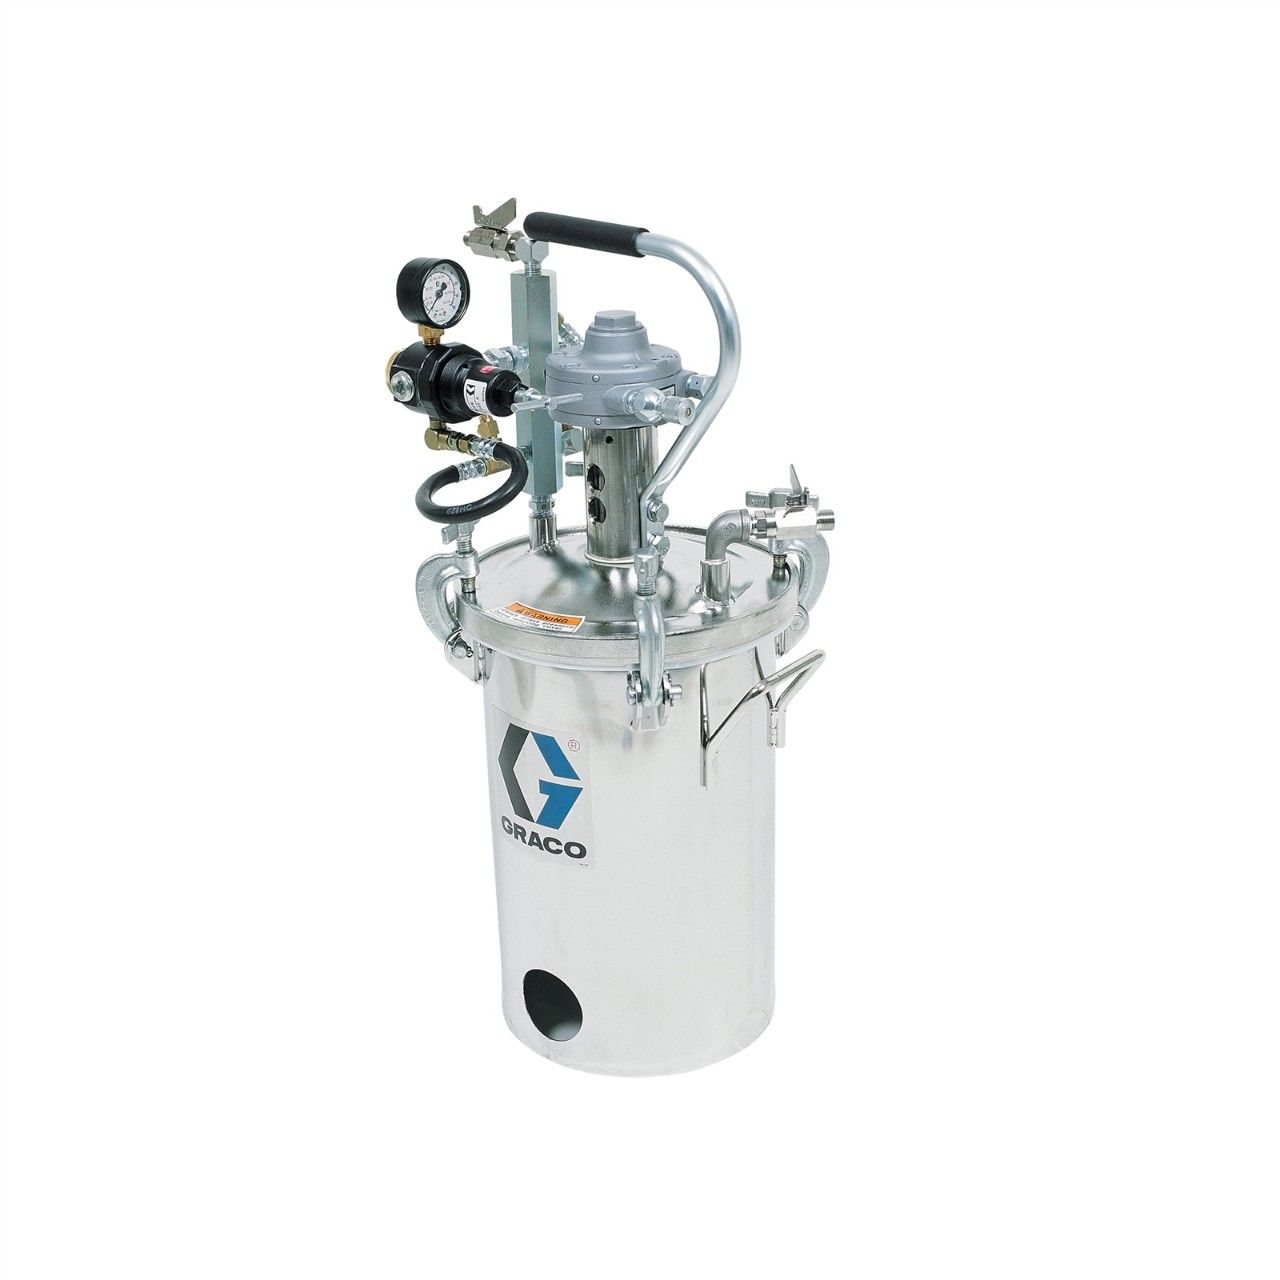 GRACO 2-Gallonen-Niederdruckbehälter (HVLP), eingestellt auf 15 psi - 236155